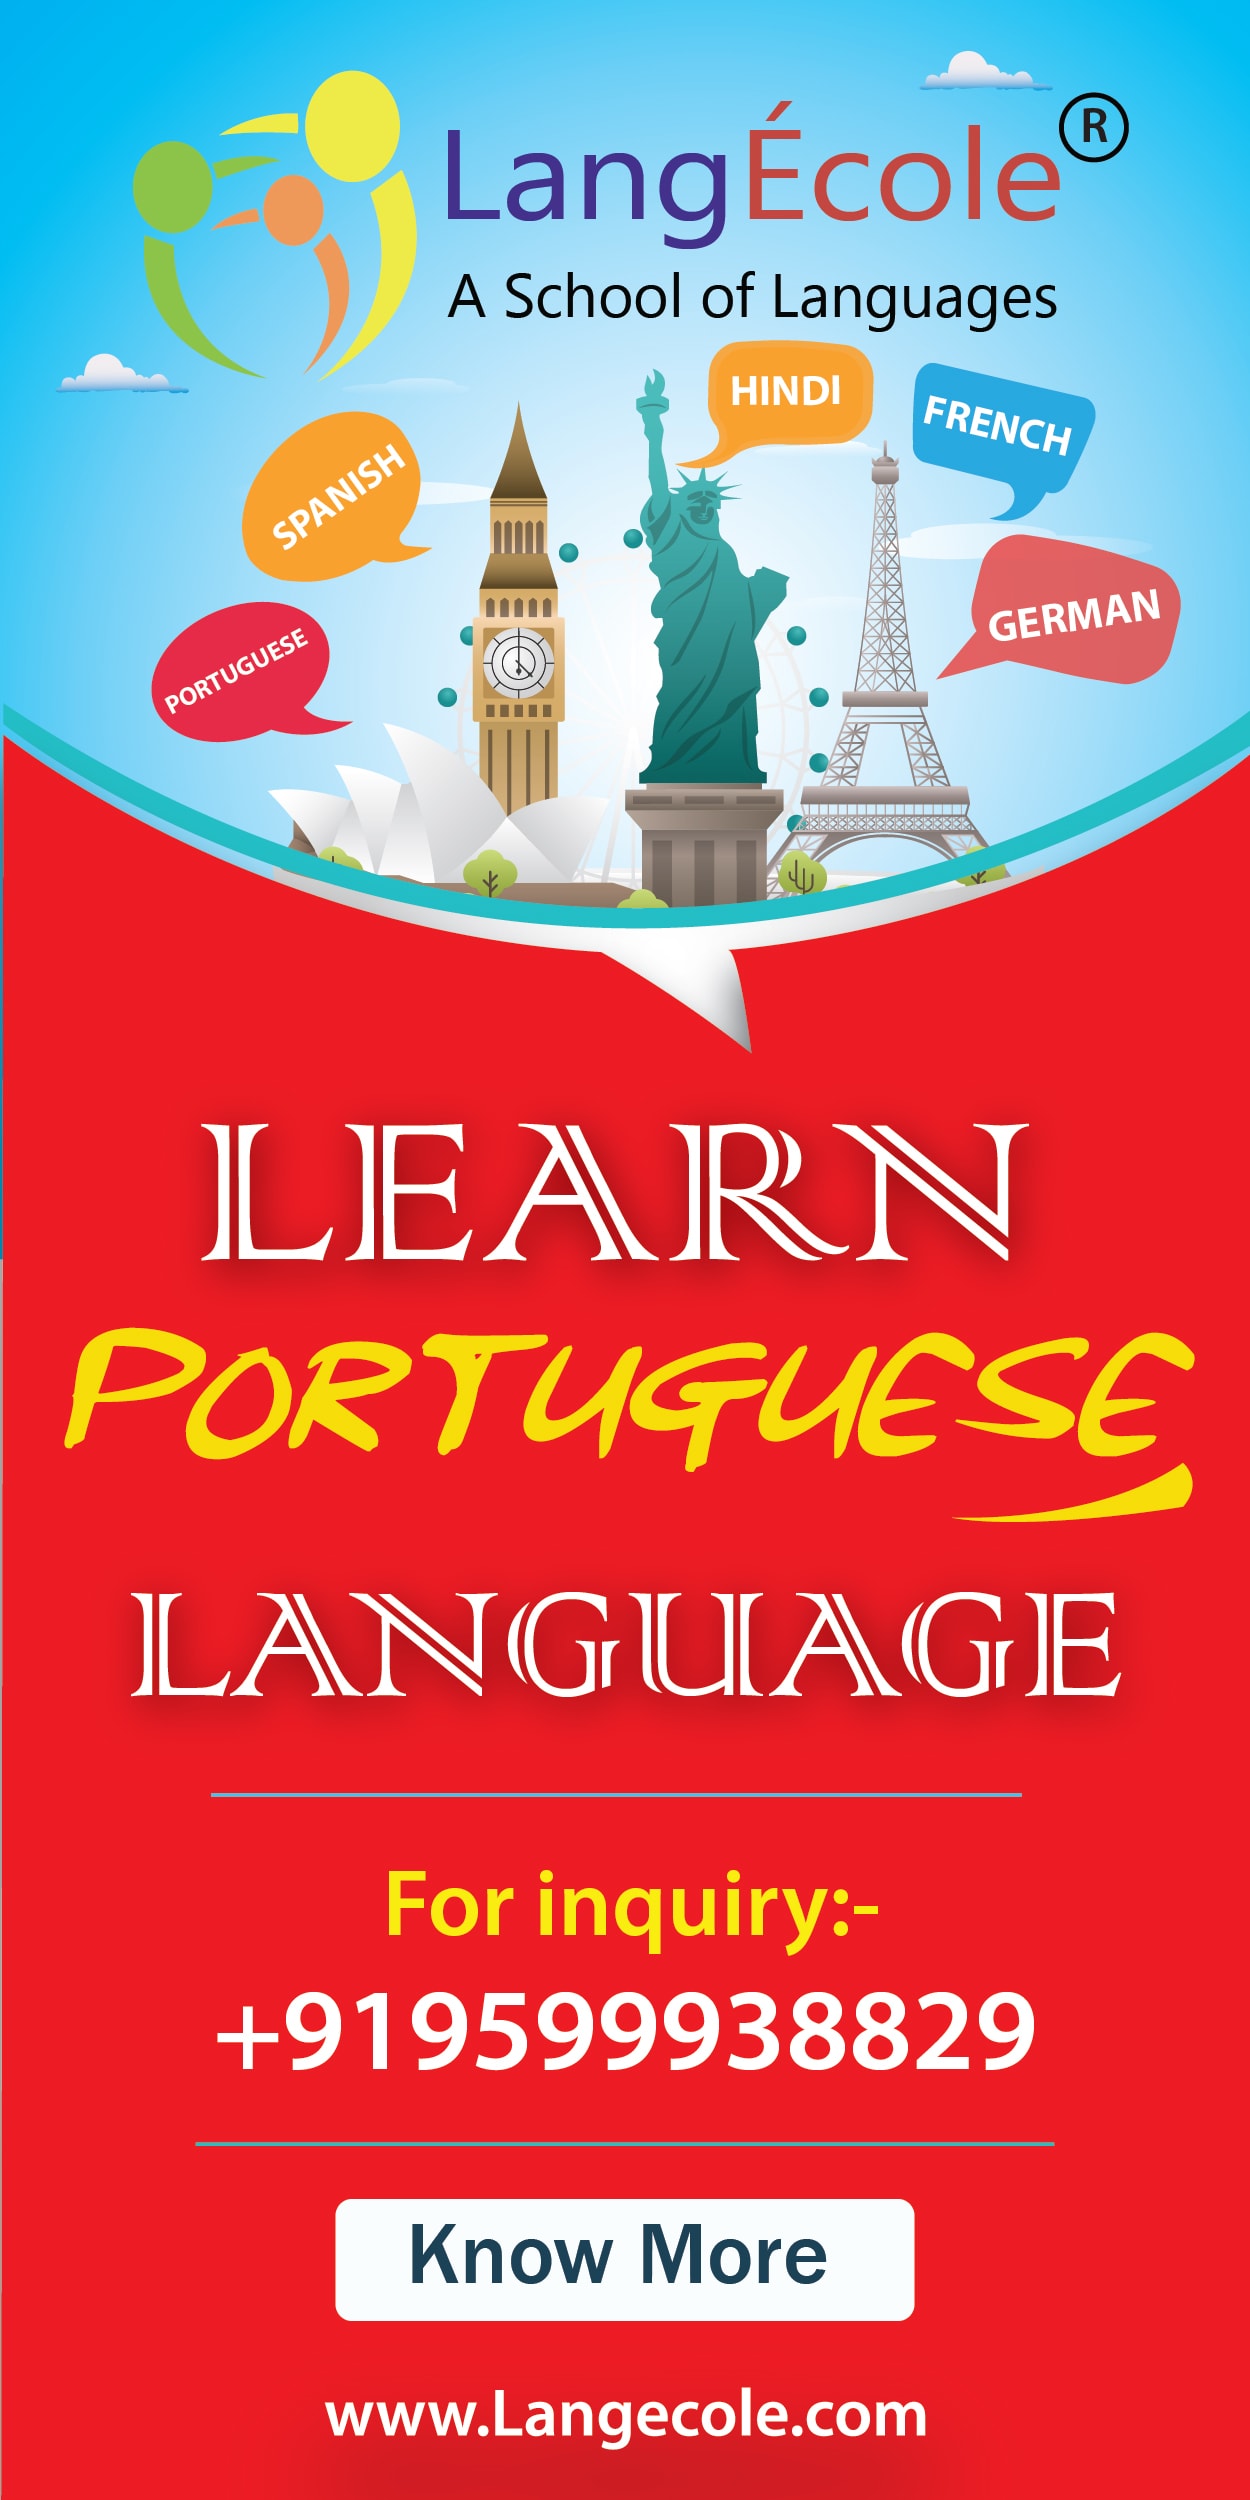 Learn Portuguese at LangÉcole Bangalore